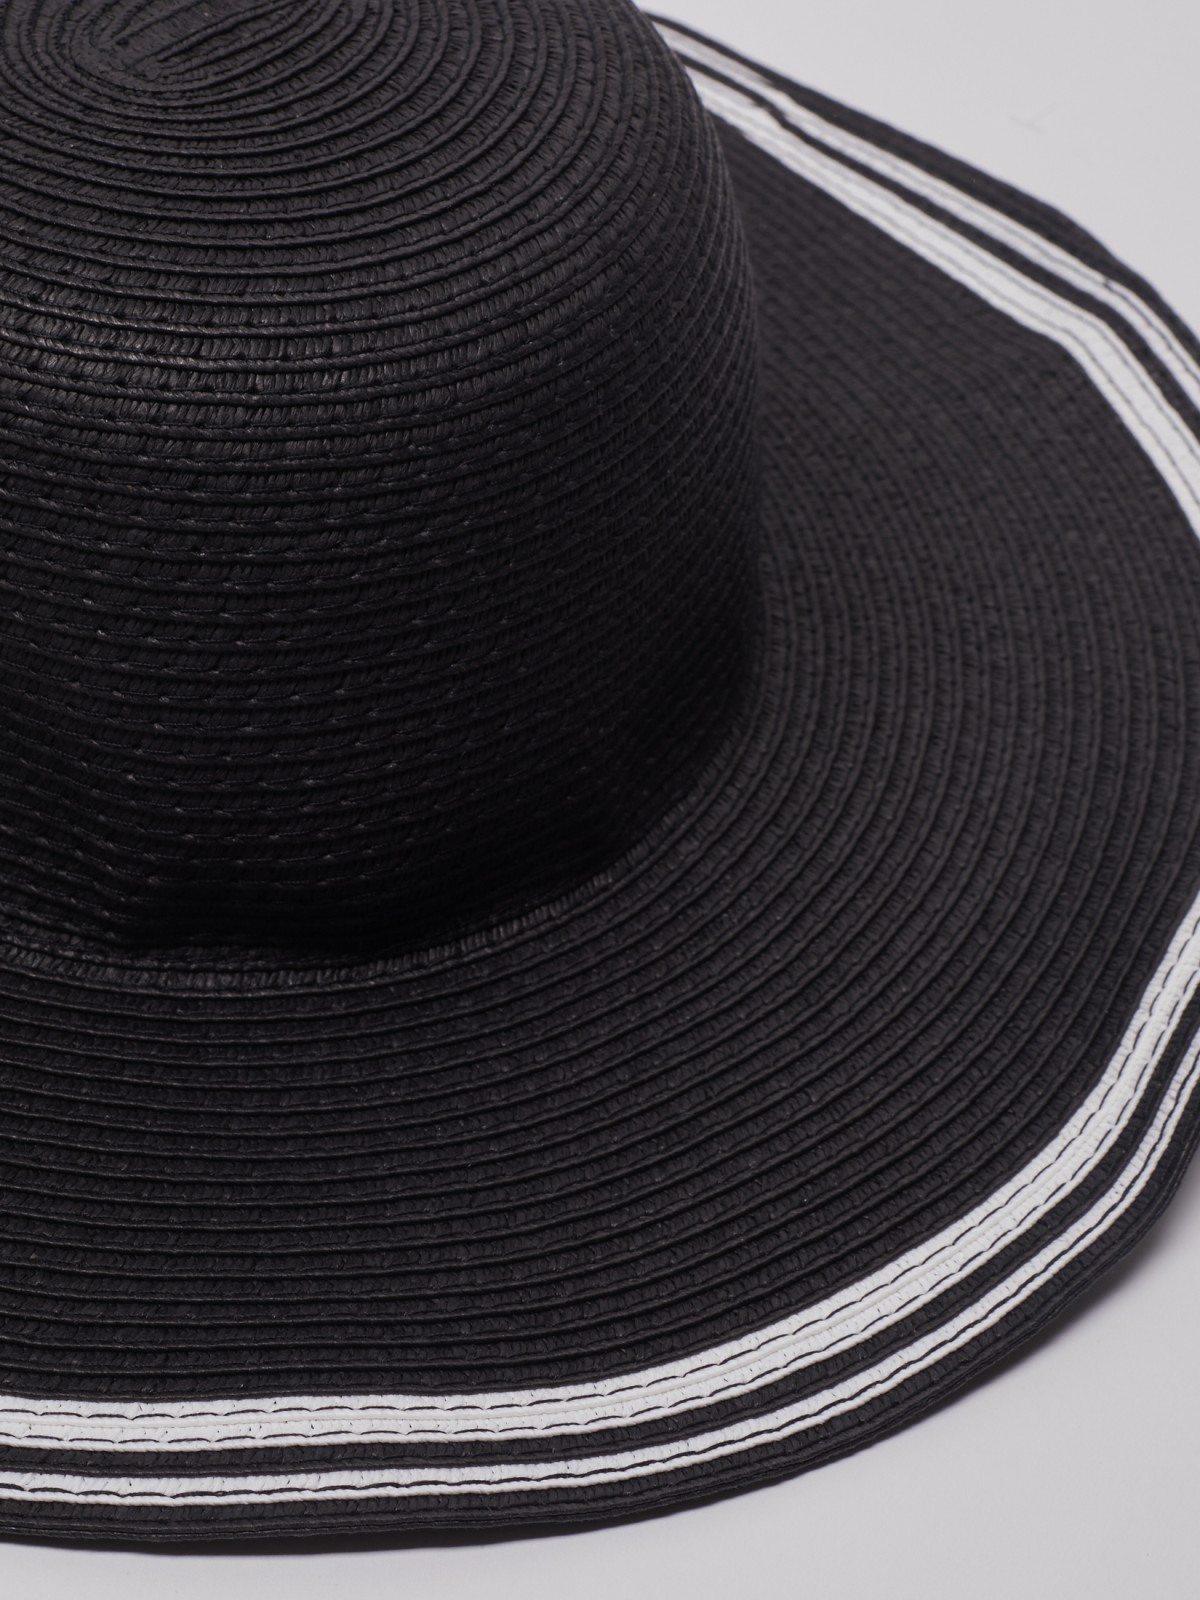 Шляпа, кепка zolla 222239F59165, цвет черный, размер 54-58 - фото 4